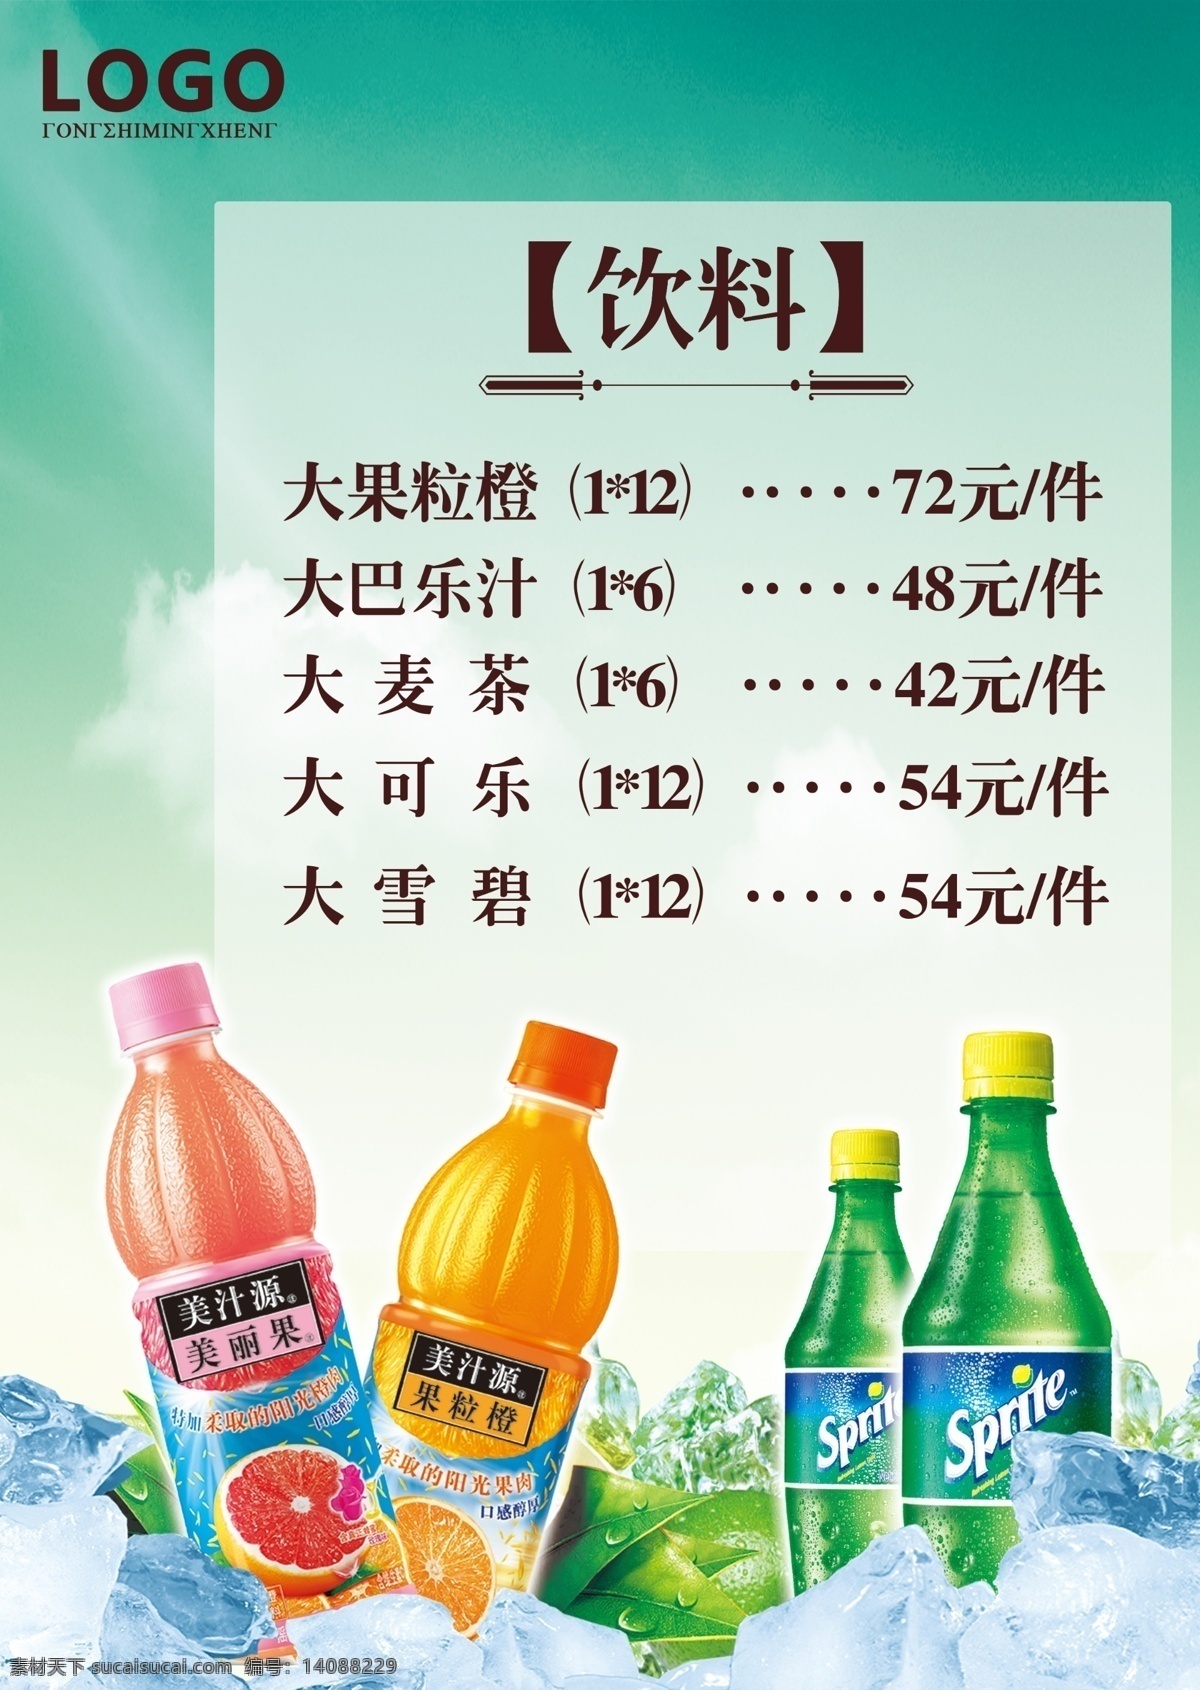 饮品广告 饮品海报 饮料广告 饮料包装 水果饮料 饮料海报 饮料宣传单 饮料 品牌饮料 饮品 白色